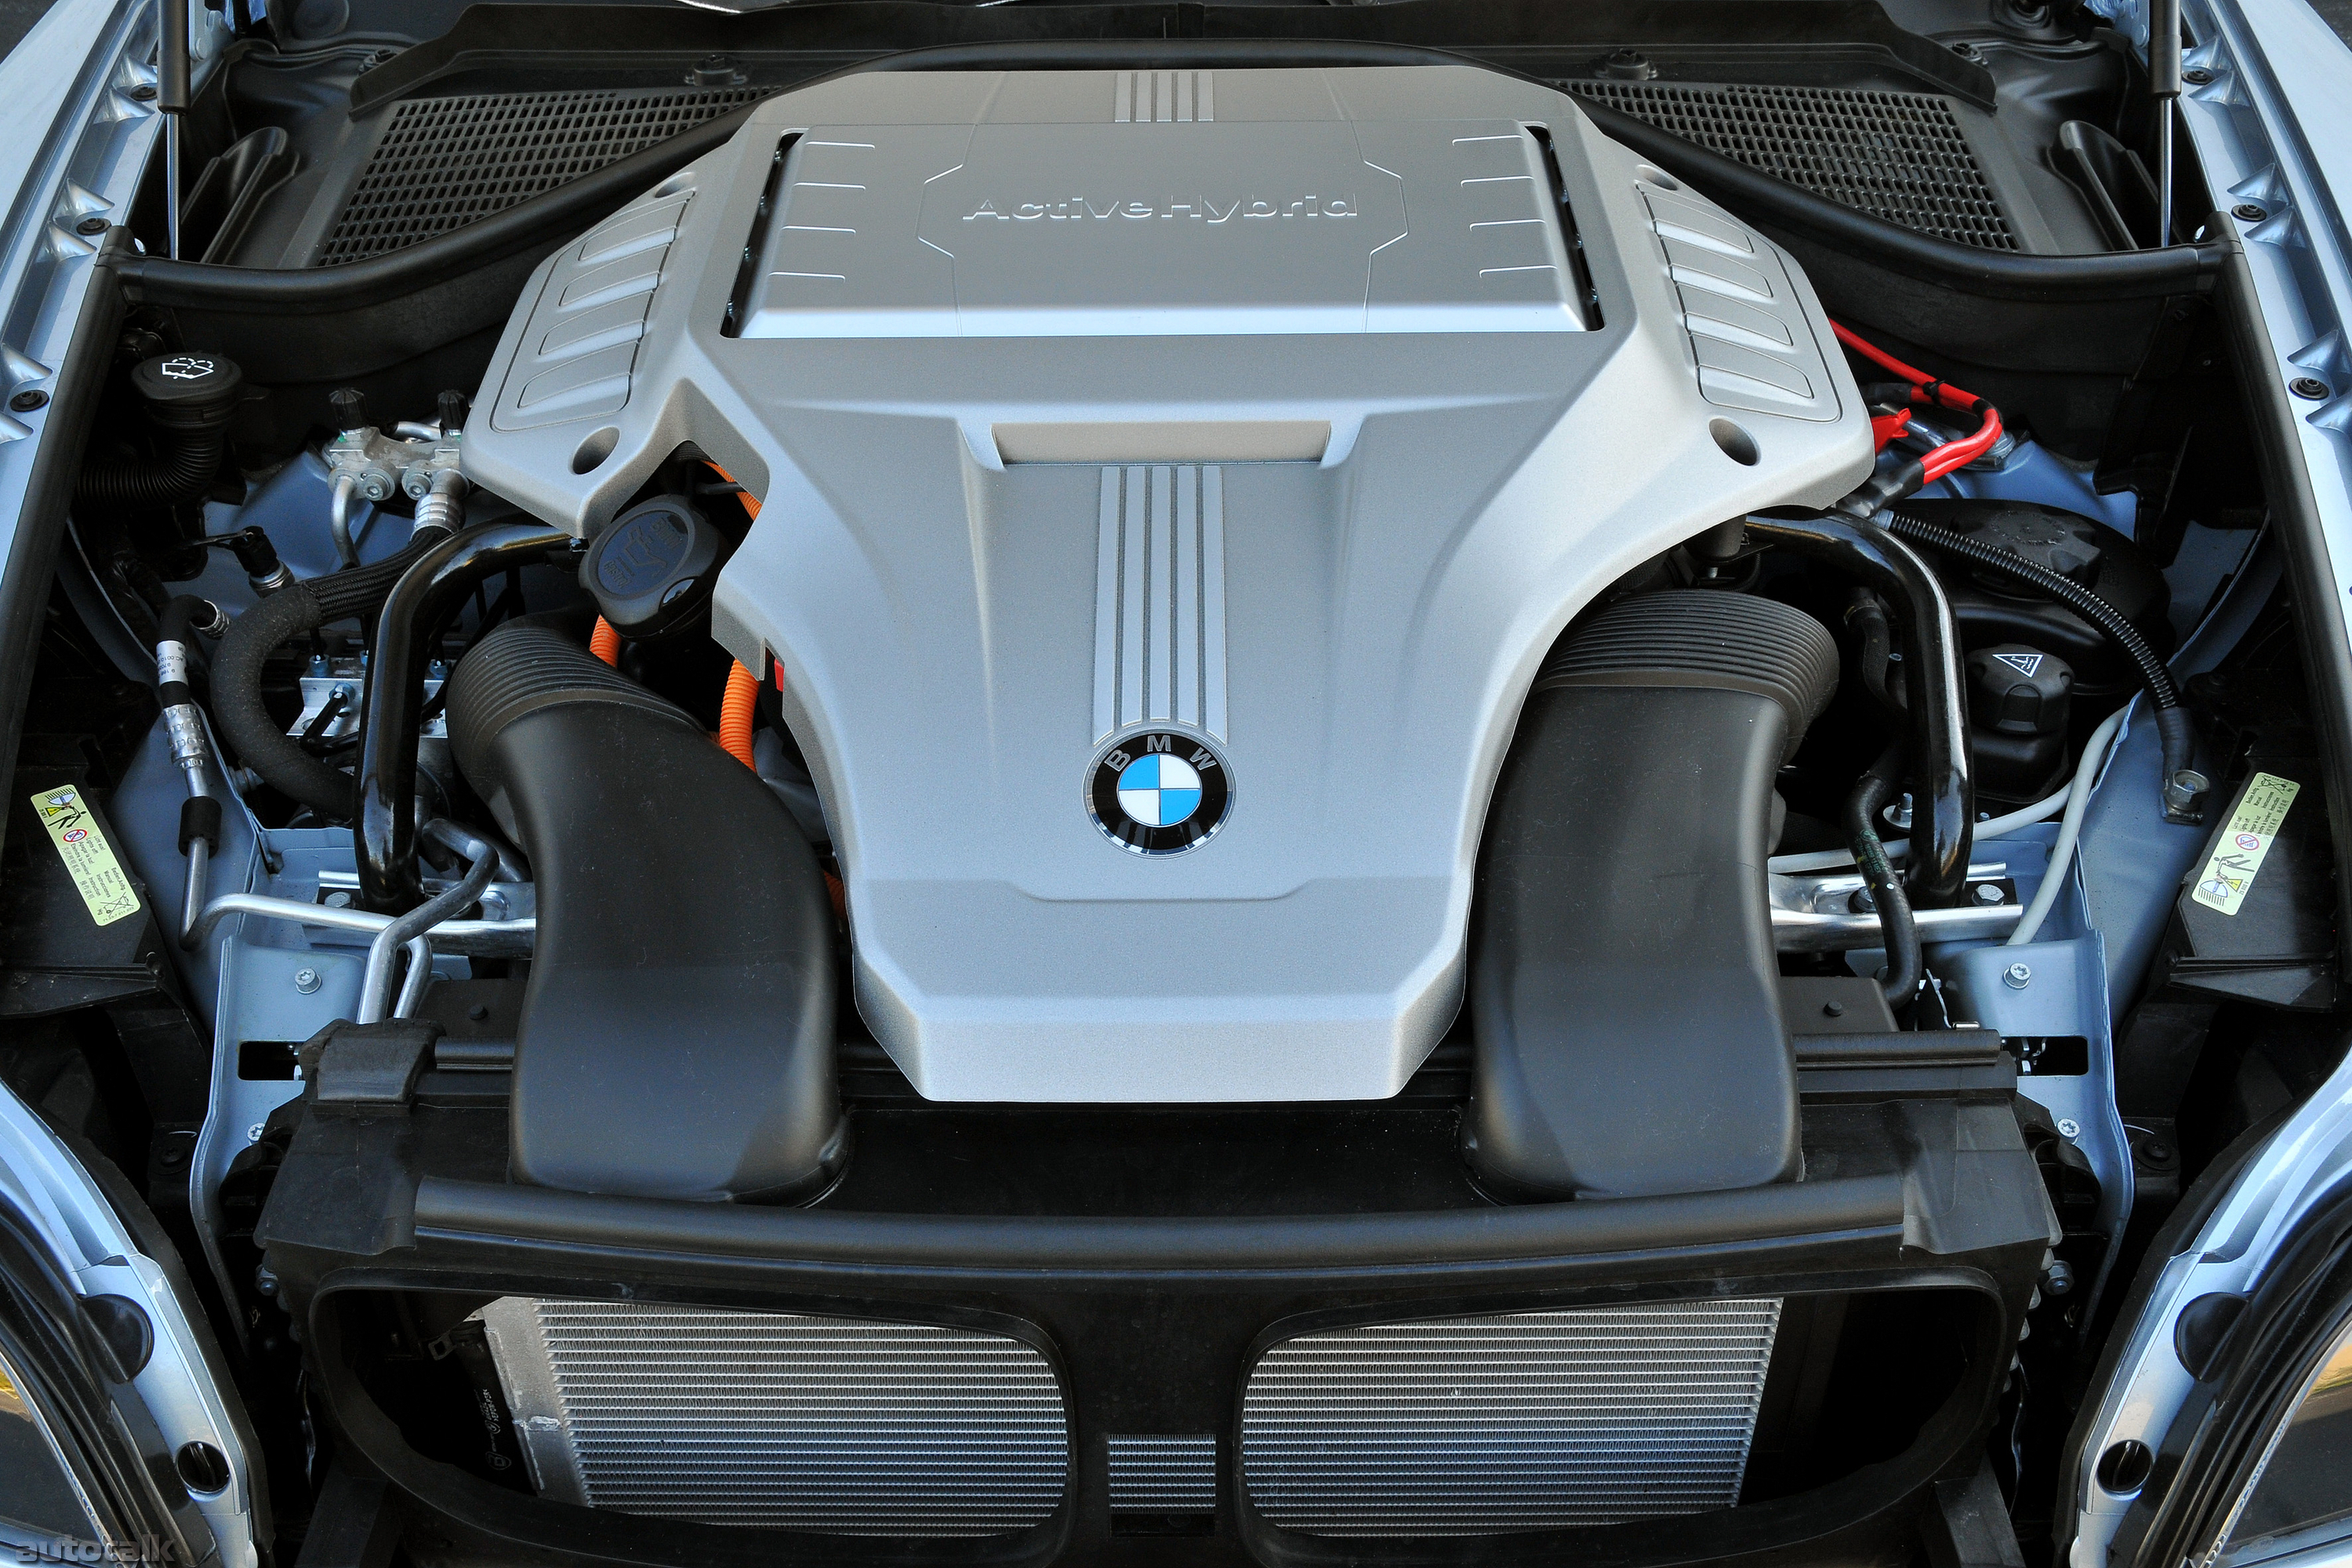 Bmw x6 двигатели. БМВ x6 гибрид двигатель. BMW x6 Hybrid. BMW x6 e71 под капотом. БМВ x6 e 71 гибрид двигатель.